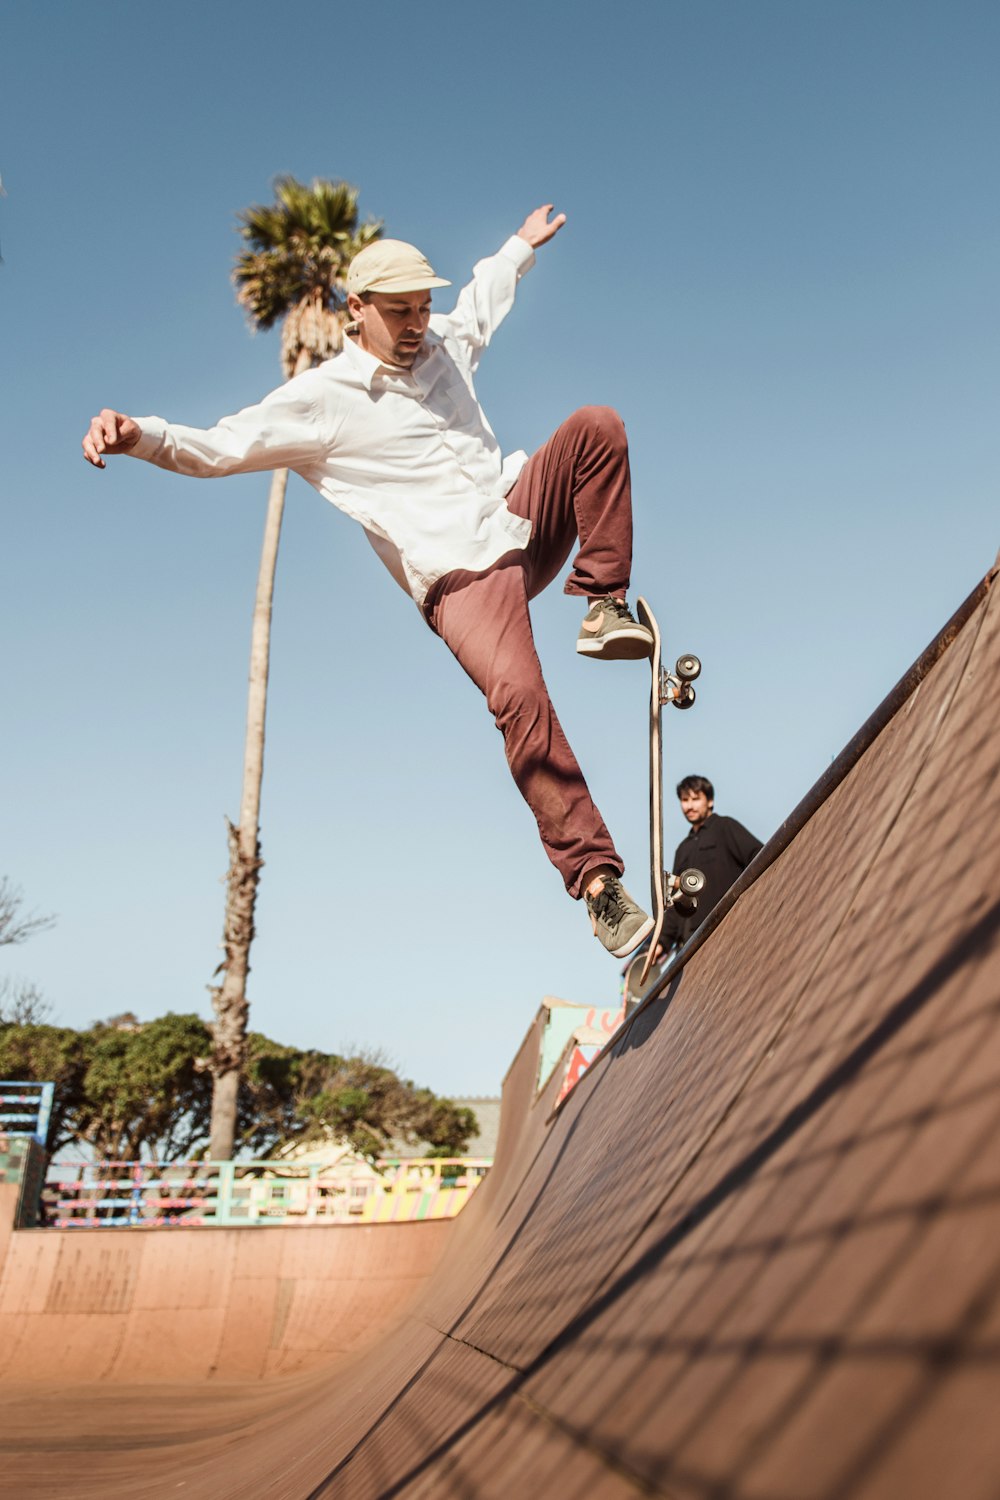 Hombre con camisa blanca y pantalones cortos rojos saltando en un poste de madera marrón durante el día